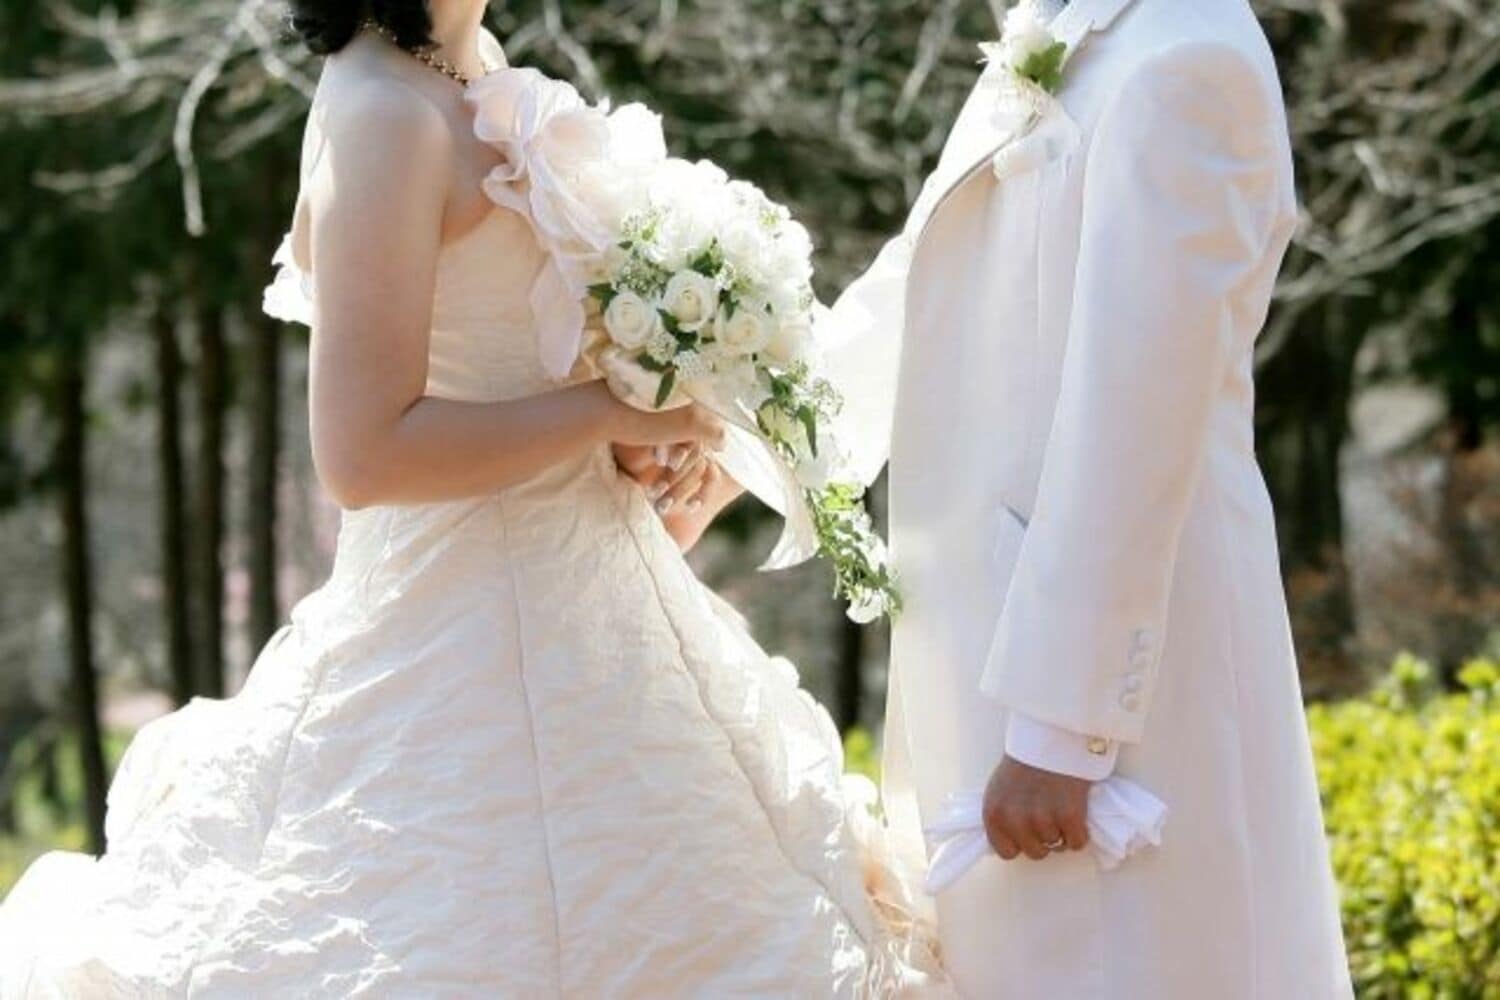 嵐・二宮和也、“結婚VTRに笑顔”でファンから悲痛な叫び「つらすぎて見ていられない」の画像